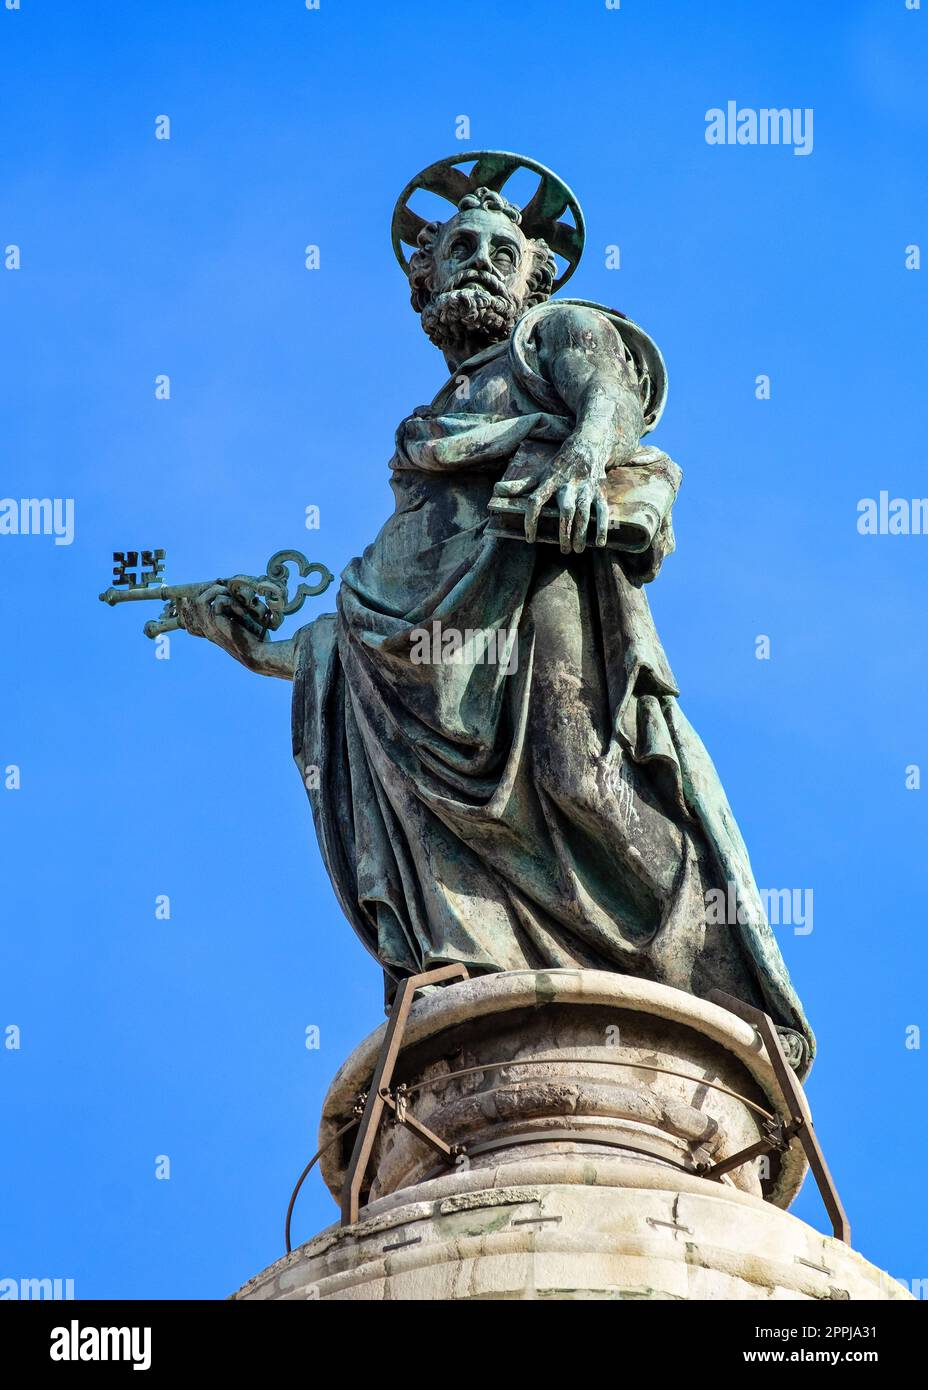 Colonne de Trajan (Colonna Traiana) et statue en bronze de Saint Pierre sur le dessus, Rome. Banque D'Images